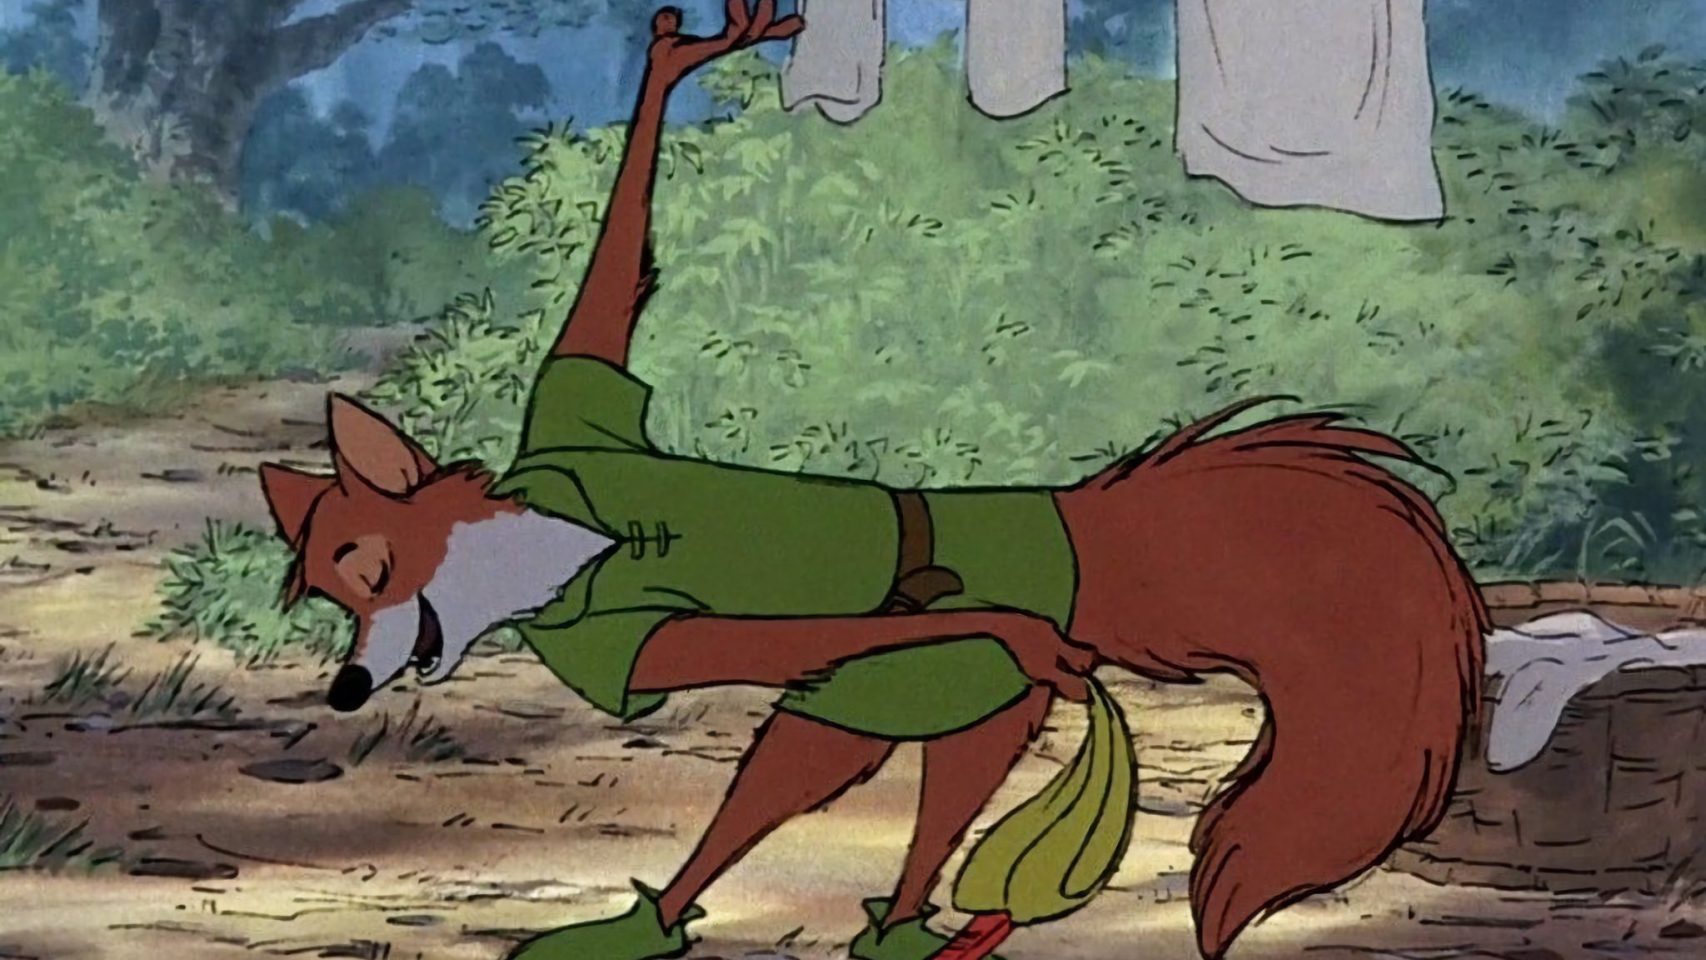 Robin Hood caracterizado como un zorro en la cinta de animación de Disney de 1973